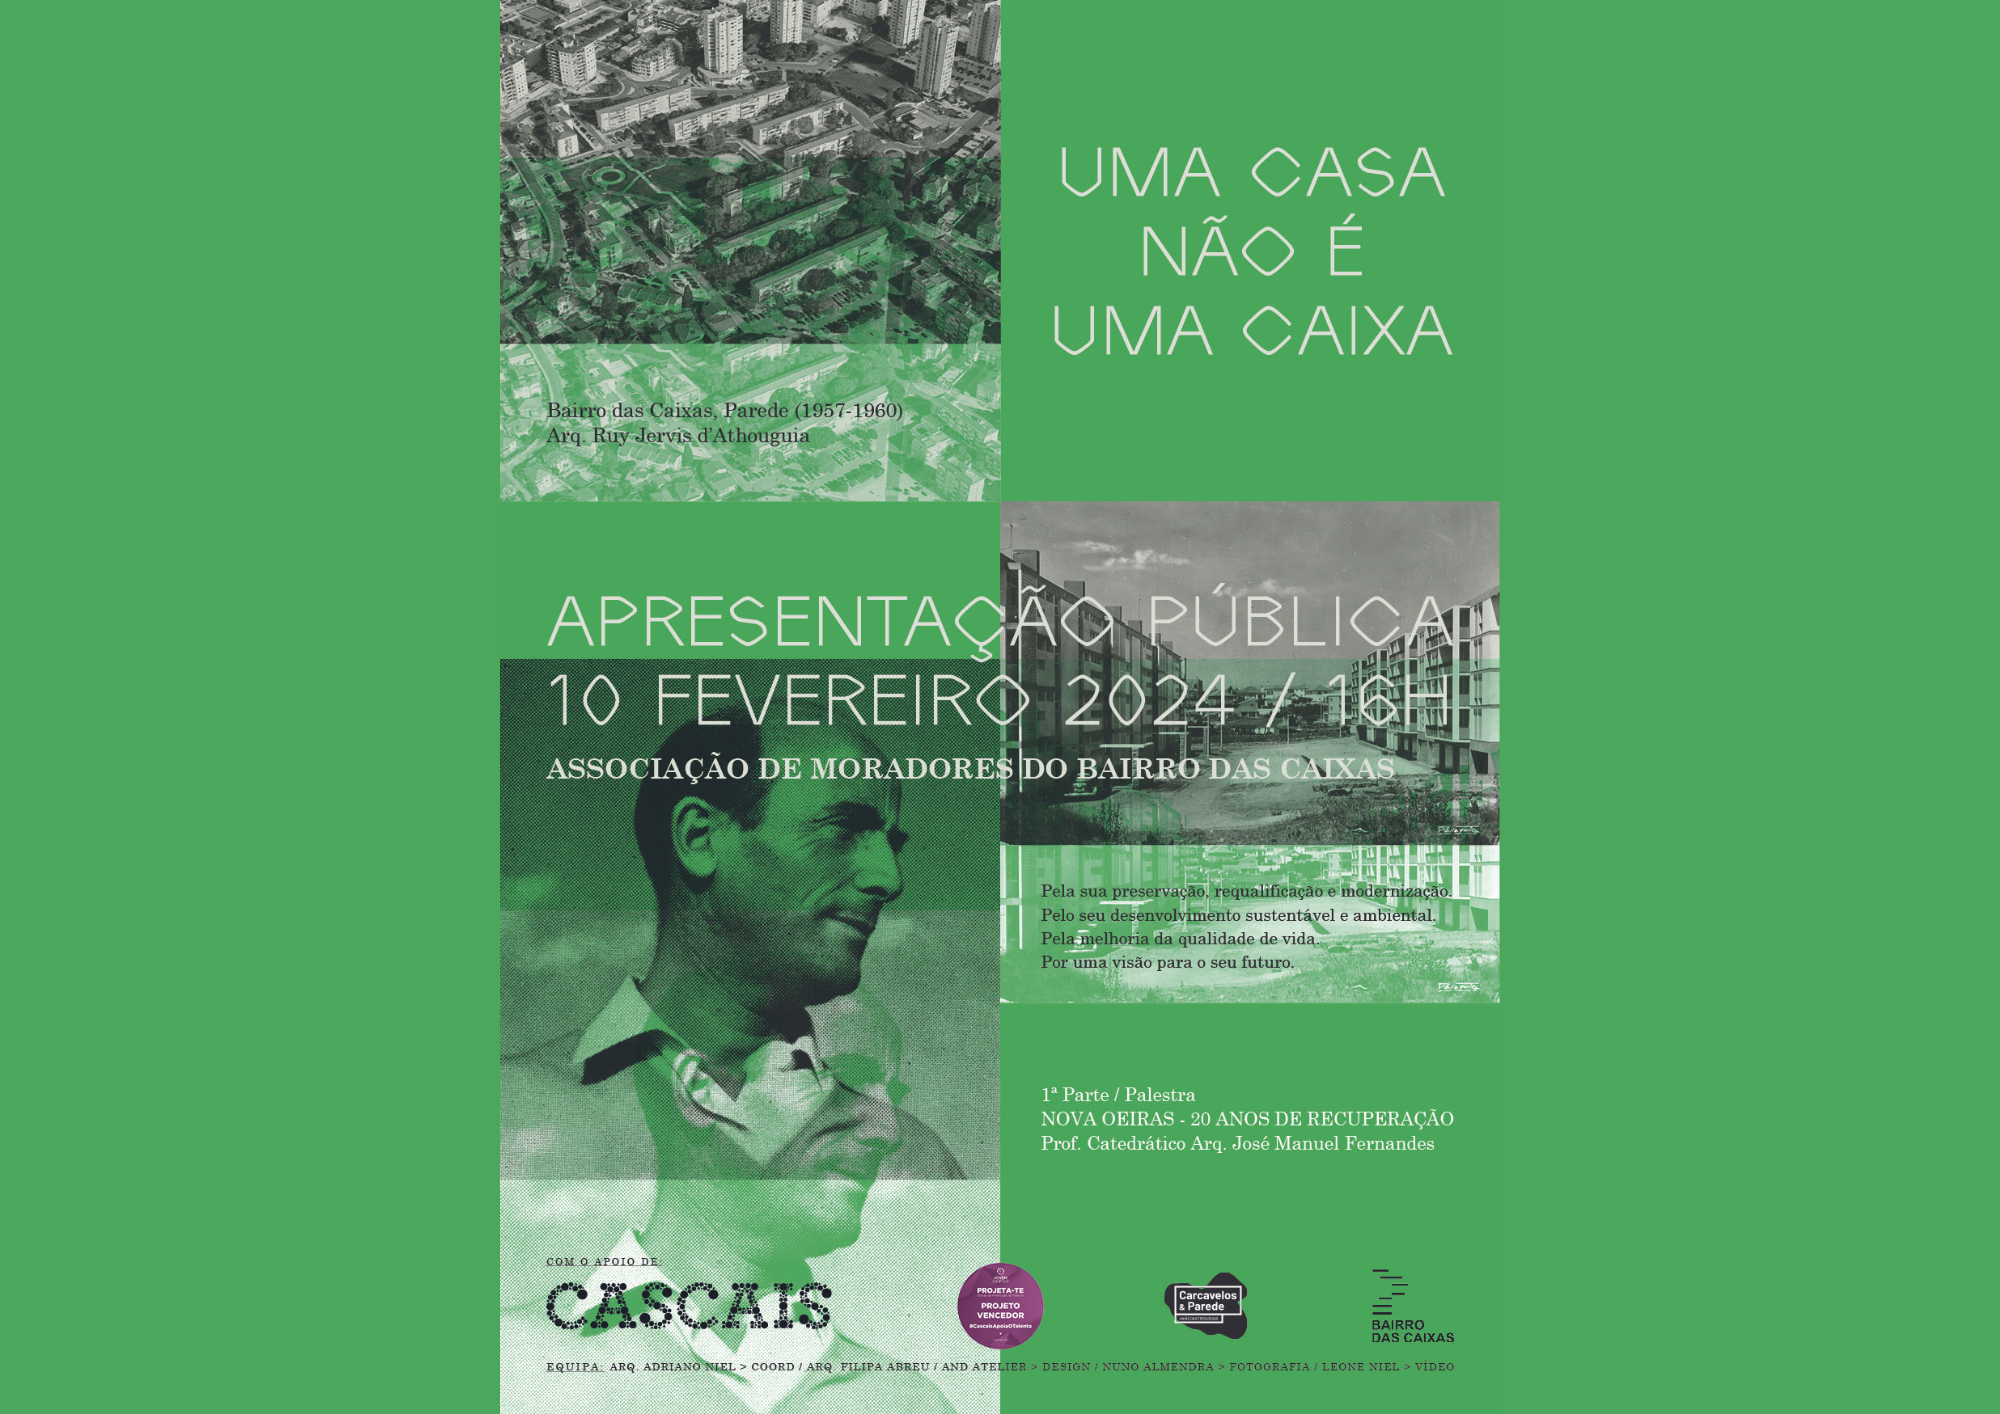 Professor José Manuel Fernandes será palestrante na apresentação pública do projeto UMA CASA NÃO É UMA CAIXA, dia 10 de fevereiro, 16h em Cascais